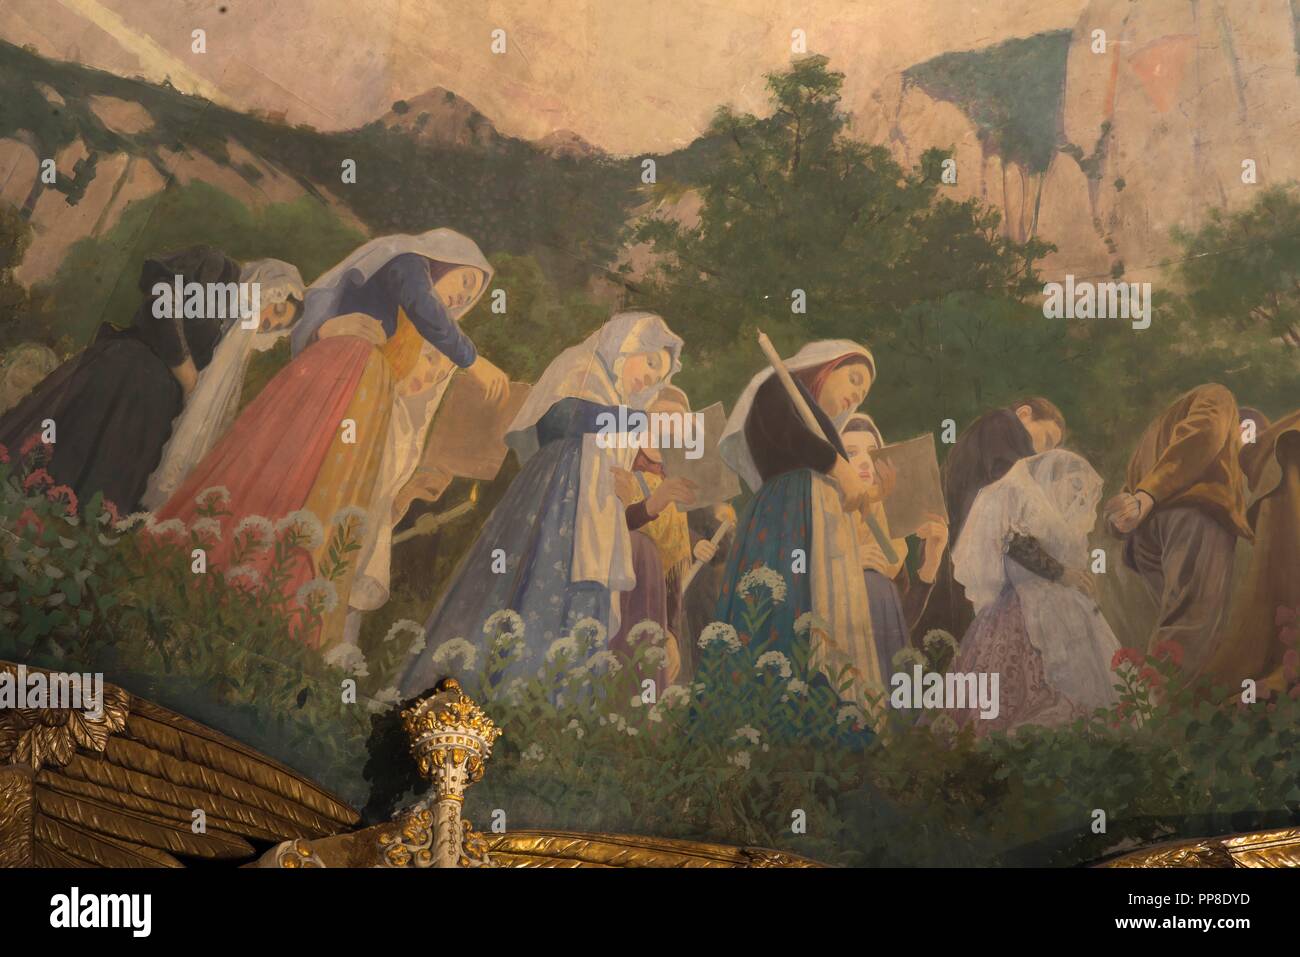 Detalle del Apoteosis de la Virgen, 1896-1898. Pintura murale de la cúpula del cambril de la Virgen. Monasterio de Montserrat. Cataluña. Auteur : LLIMONA, JOAN. Banque D'Images